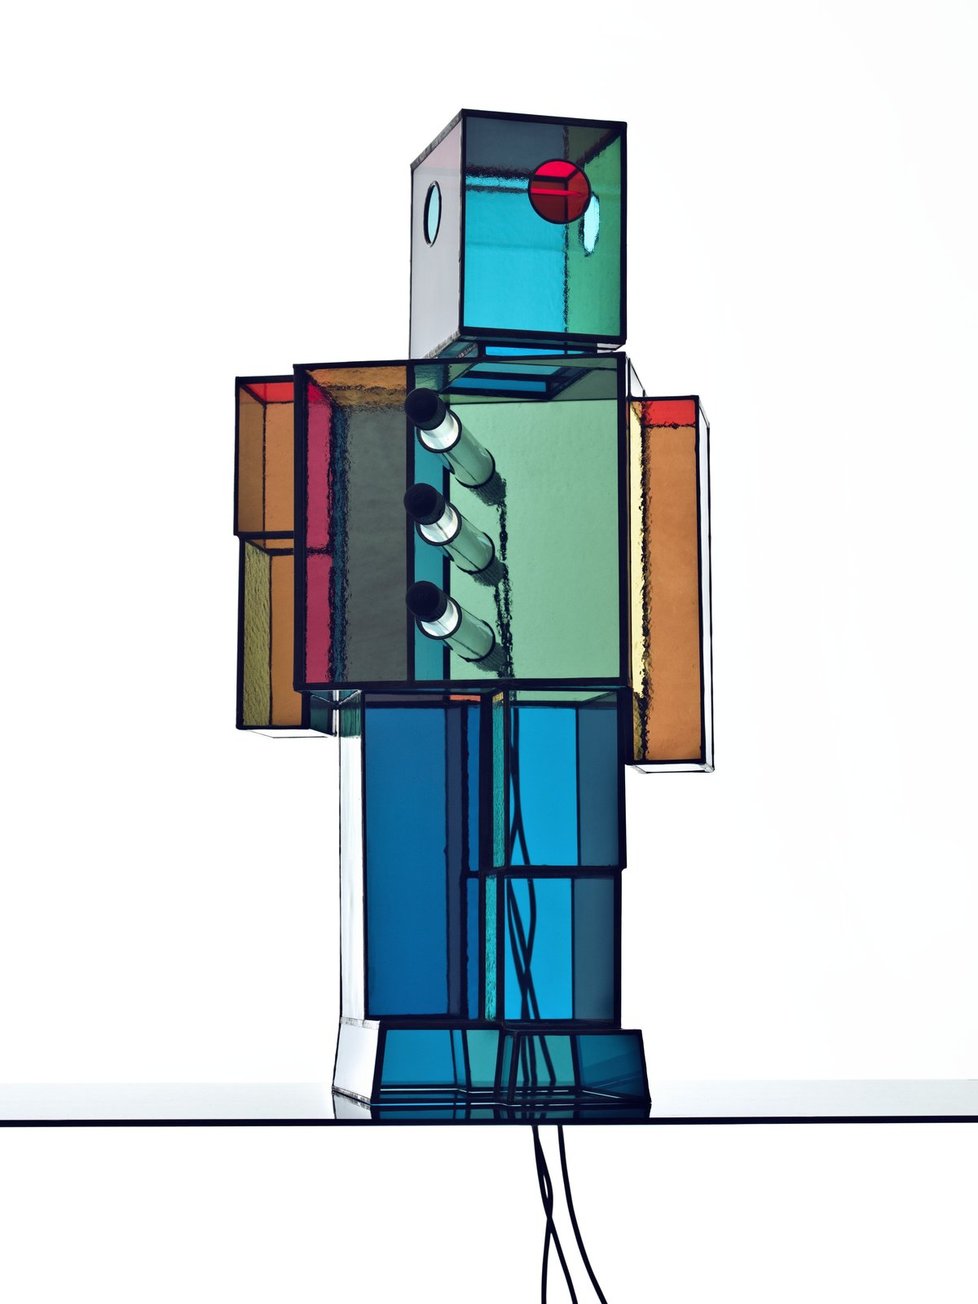 Světelný robot Jakuba Berdycha pro galerii Křehký. Součást nabídky Art House v Colloredo – Mansfeld paláci.